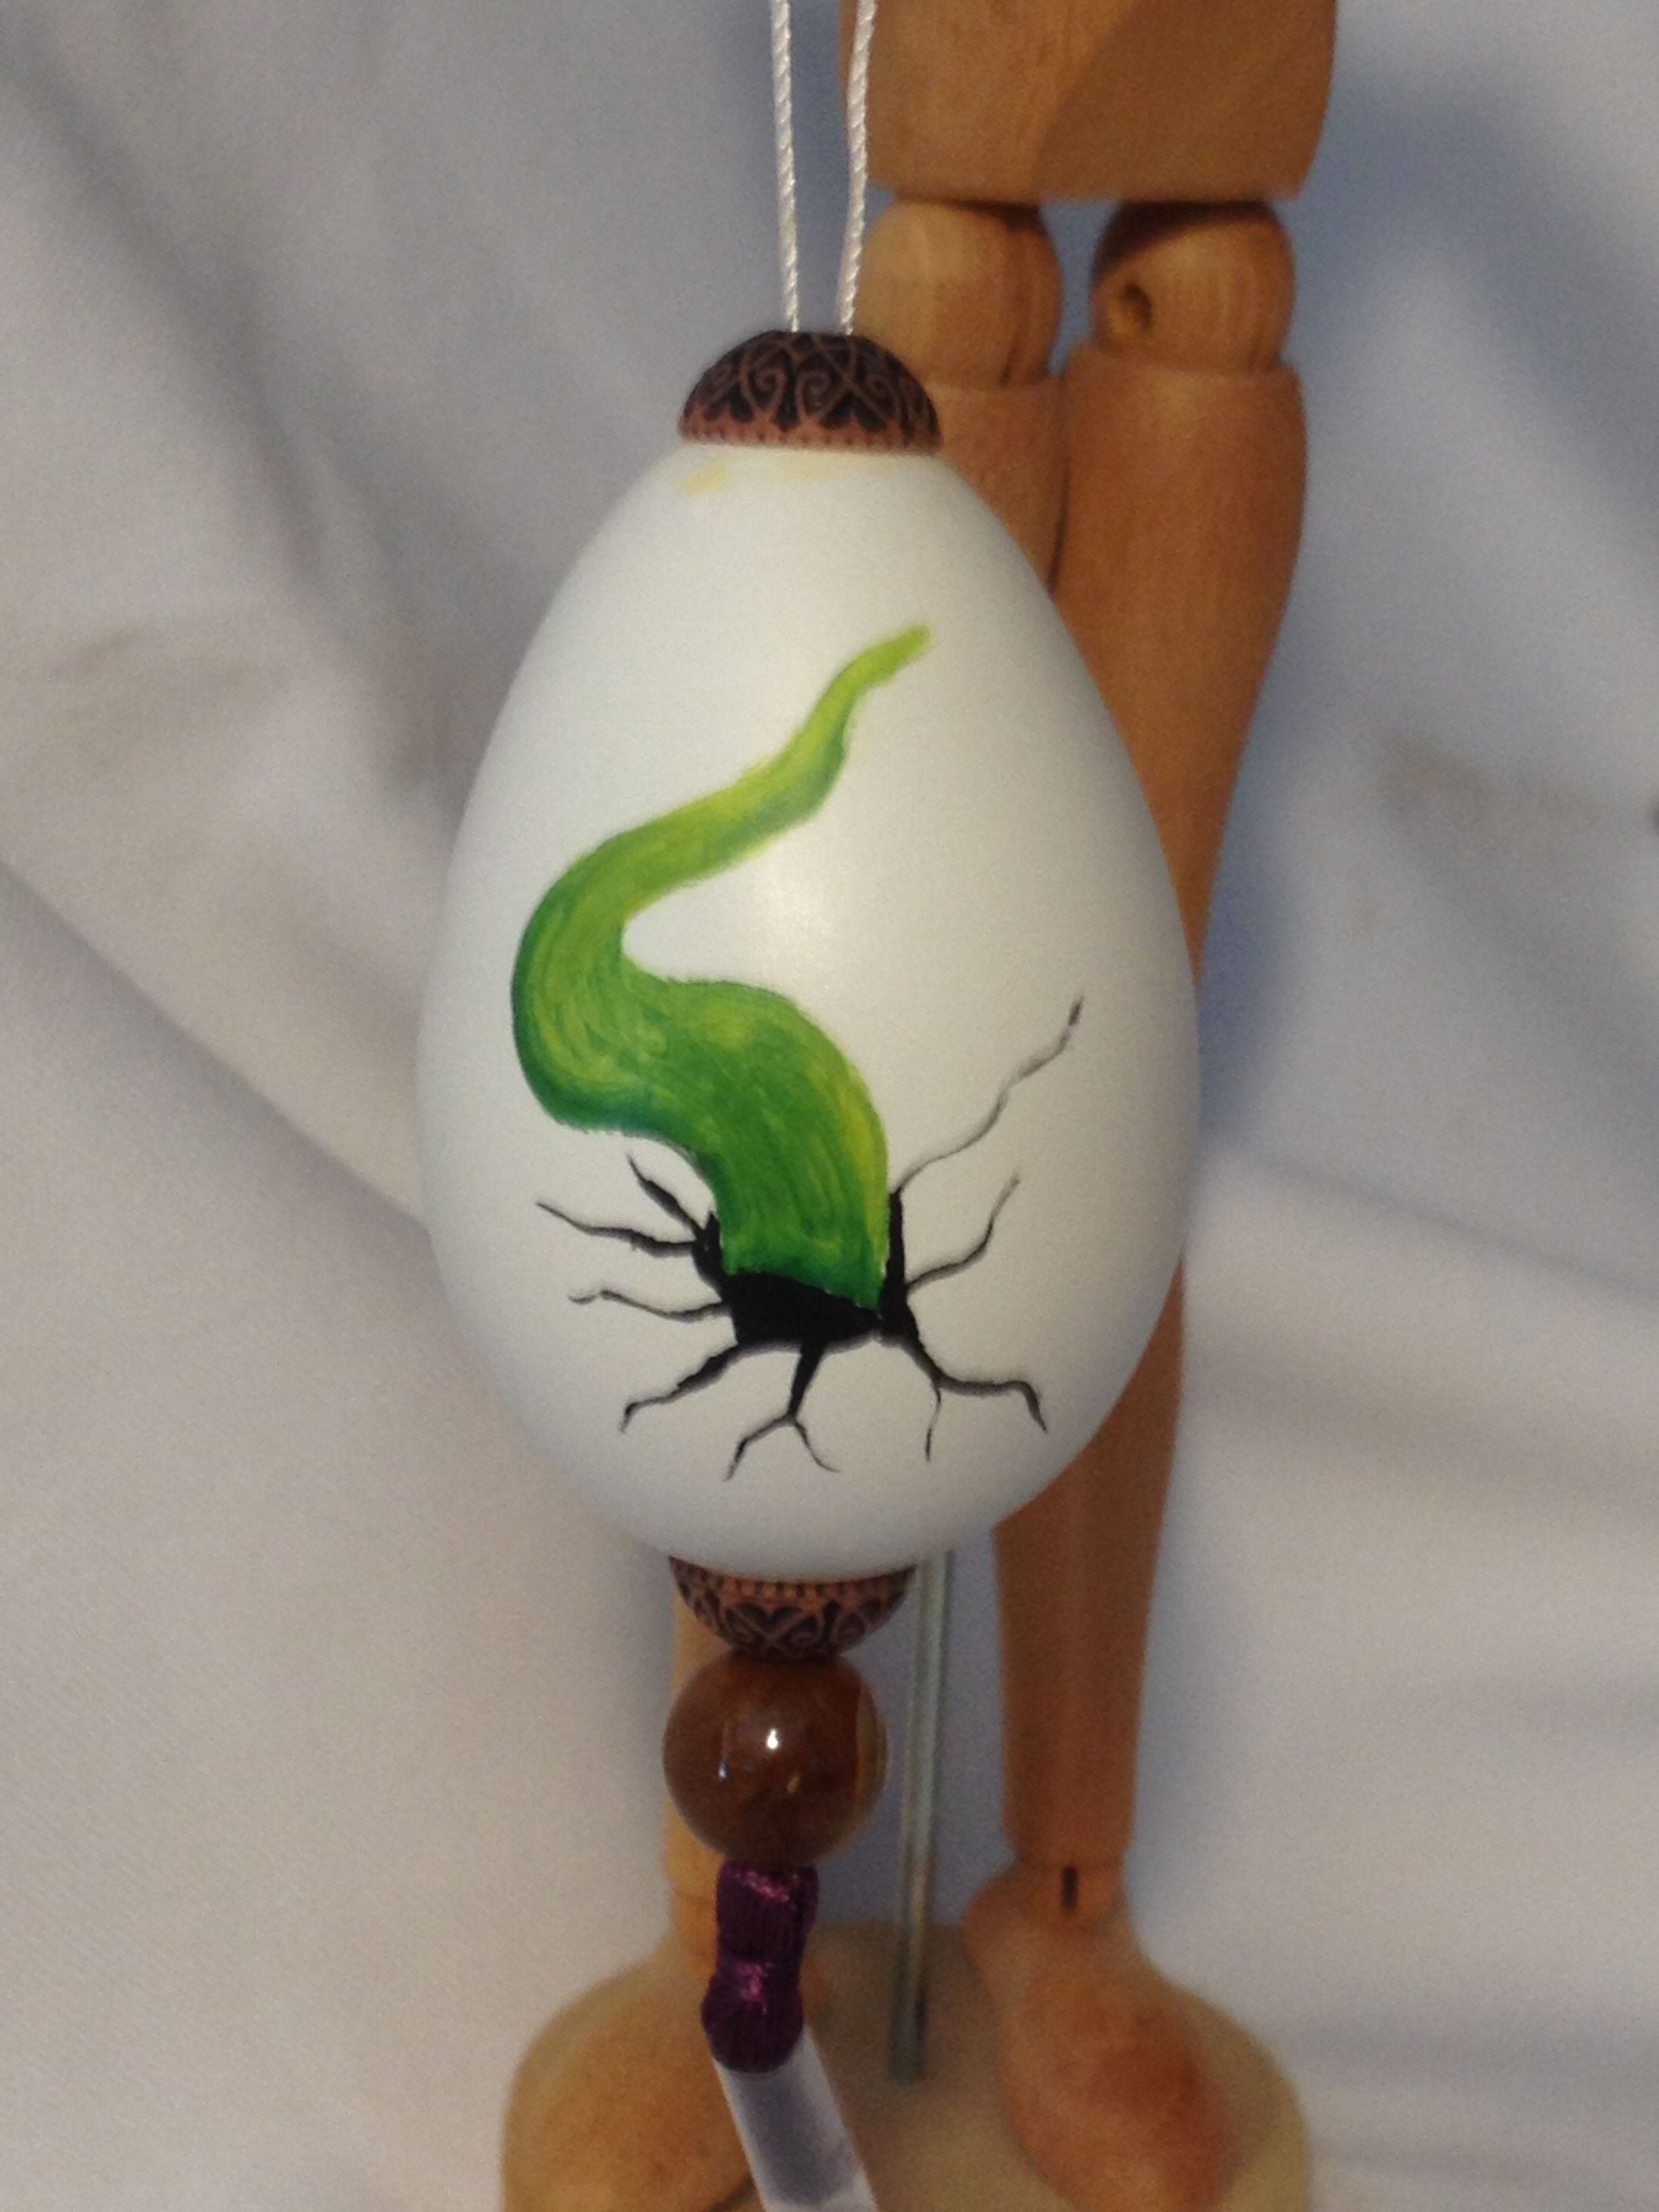 Oil paint of hatching green dragonett tail on chicken egg $20.